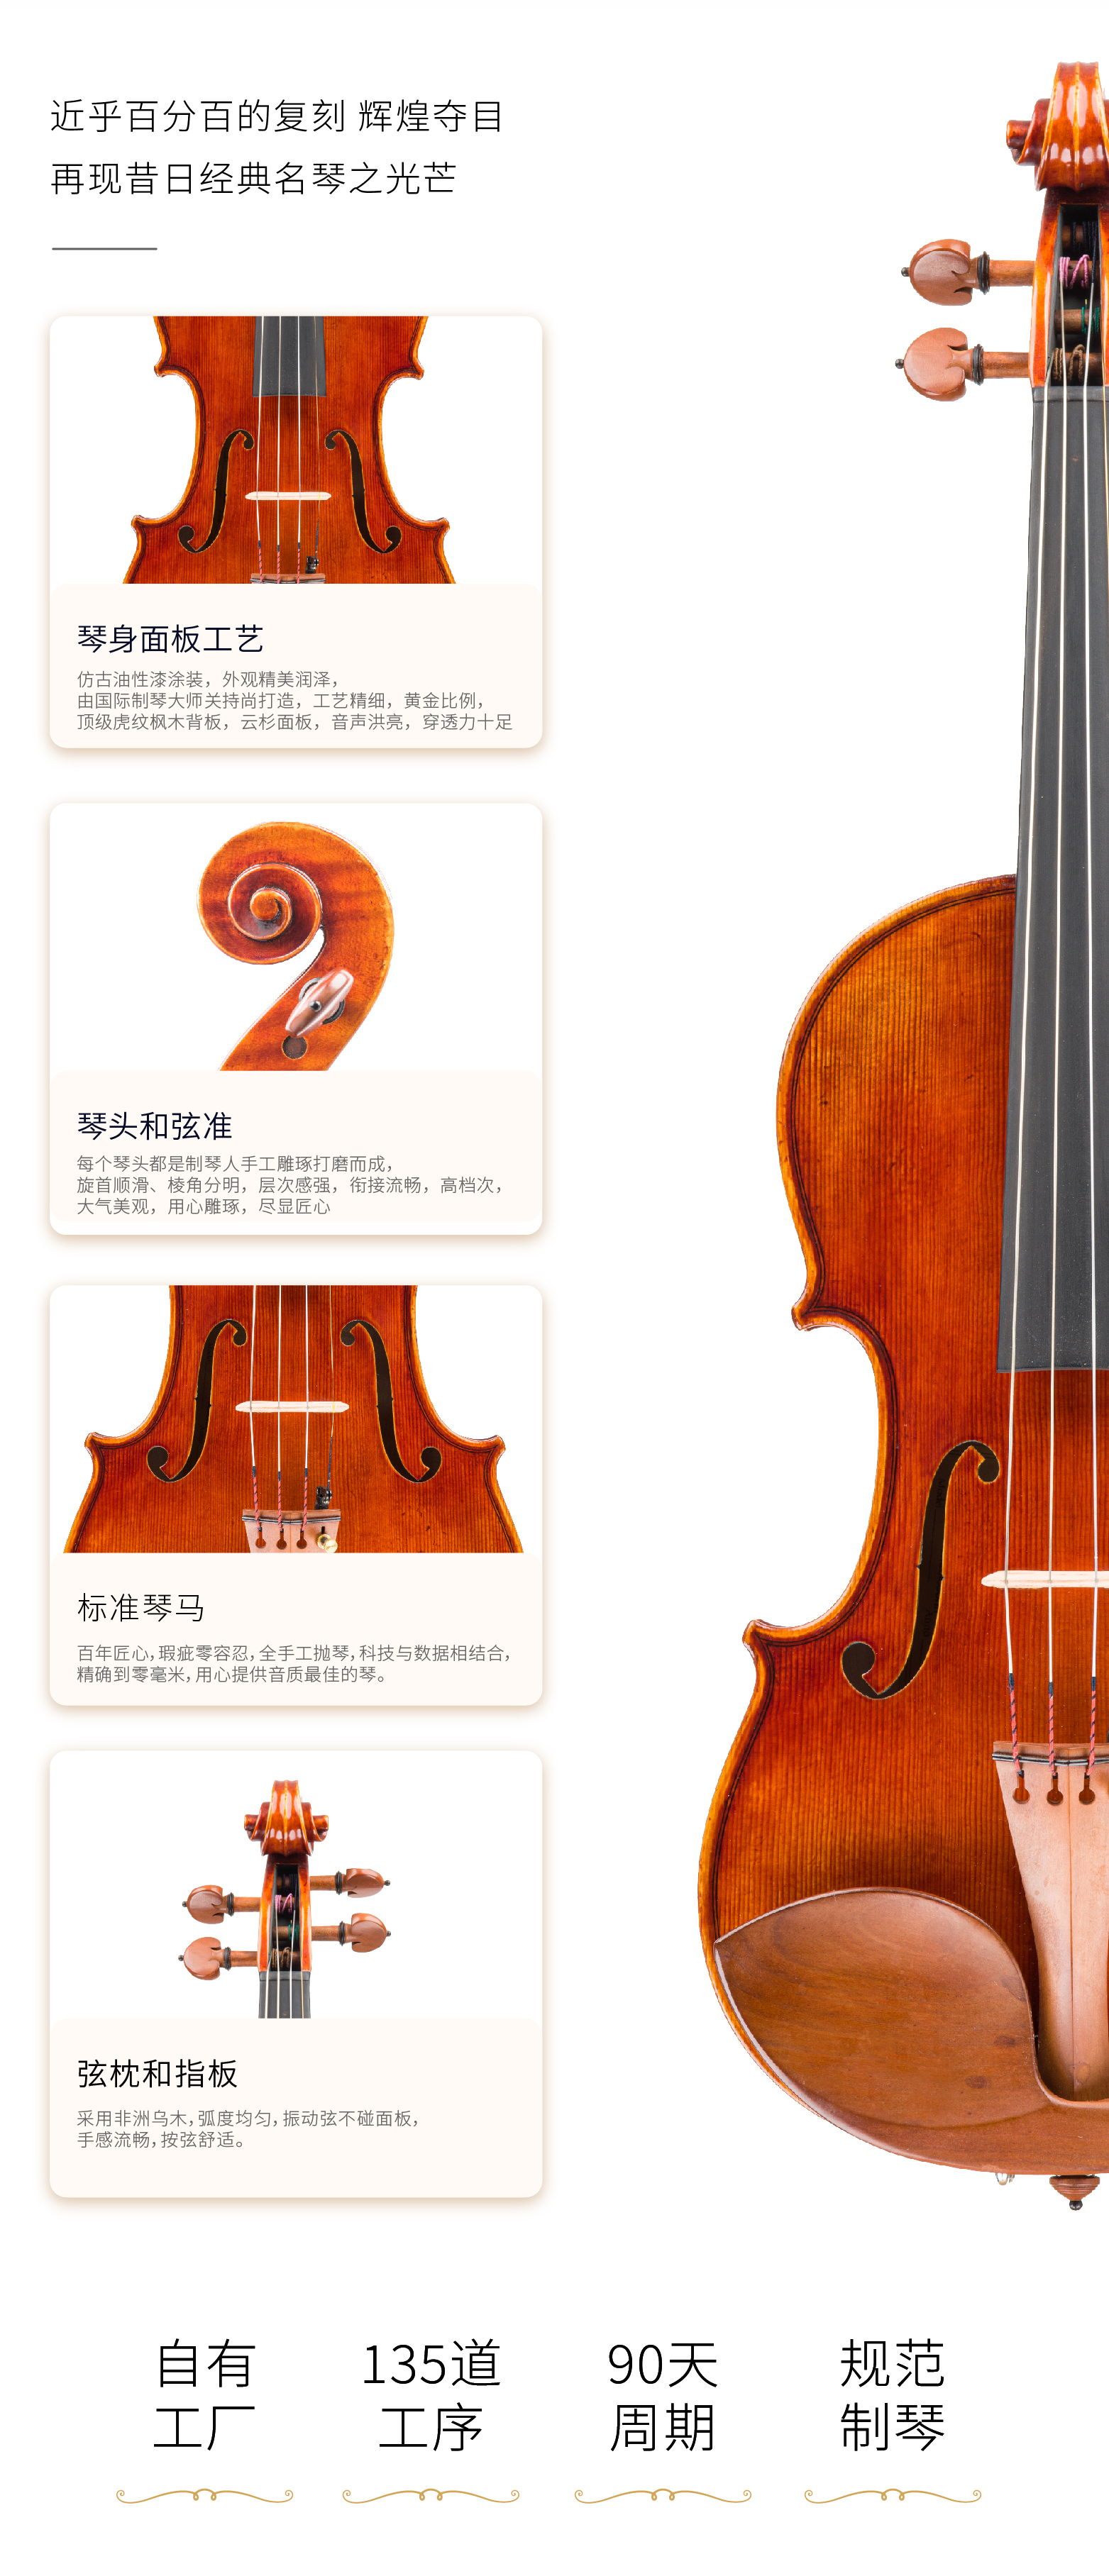 熙珑乐器专营店-详情-v1-2_XL2000小提琴_PC-副本-2_07.jpg